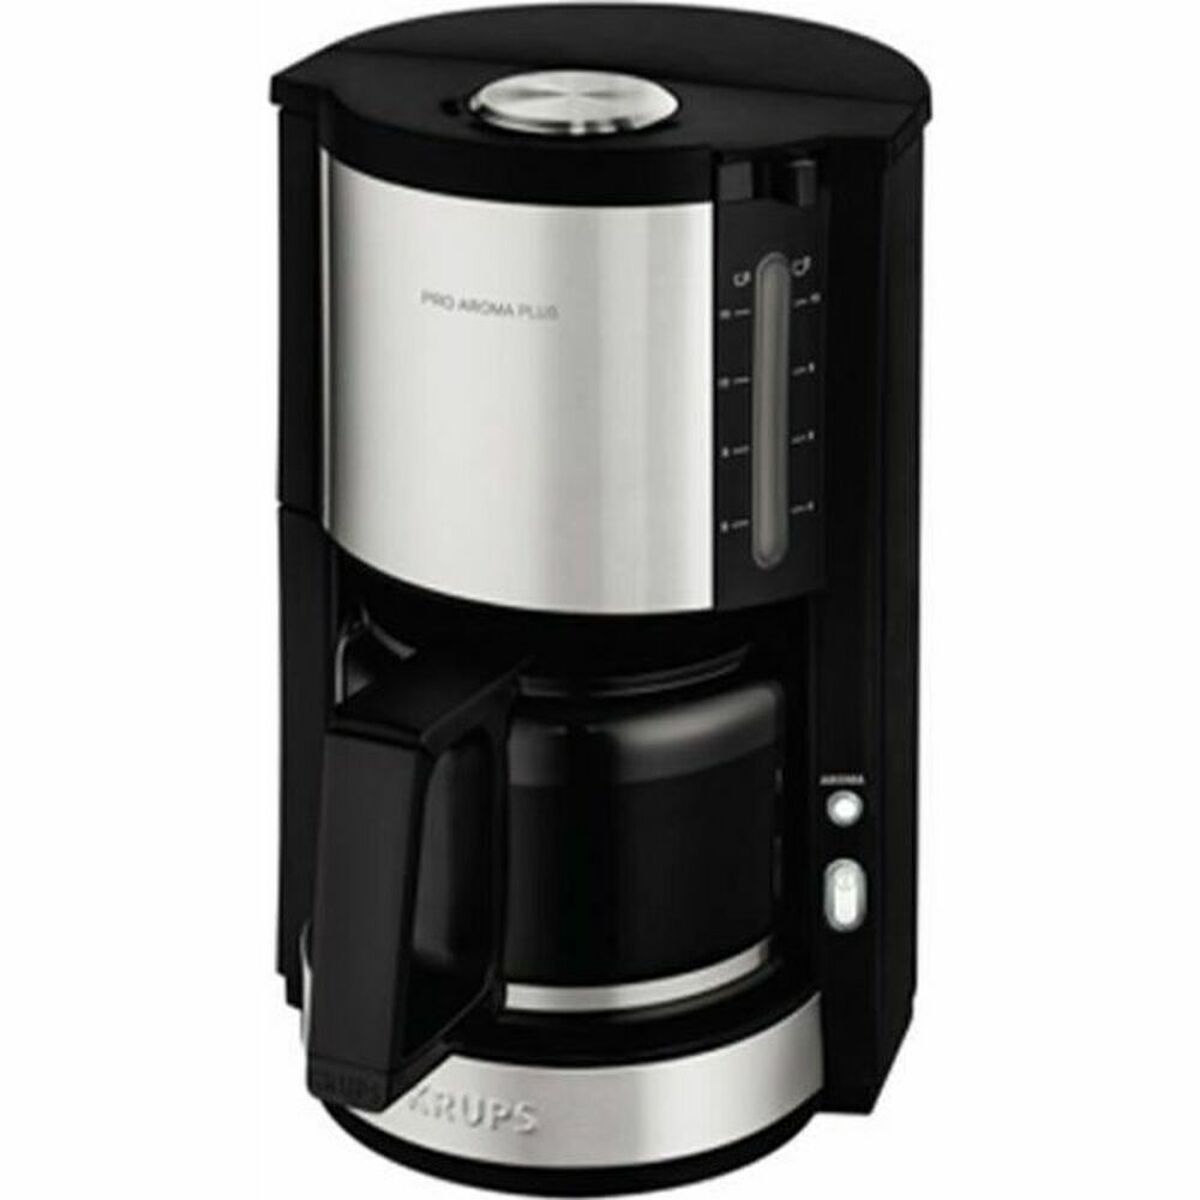 Filterkaffeemaschine Krups ProAroma Plus 1,5 L 1100 W - CA International 